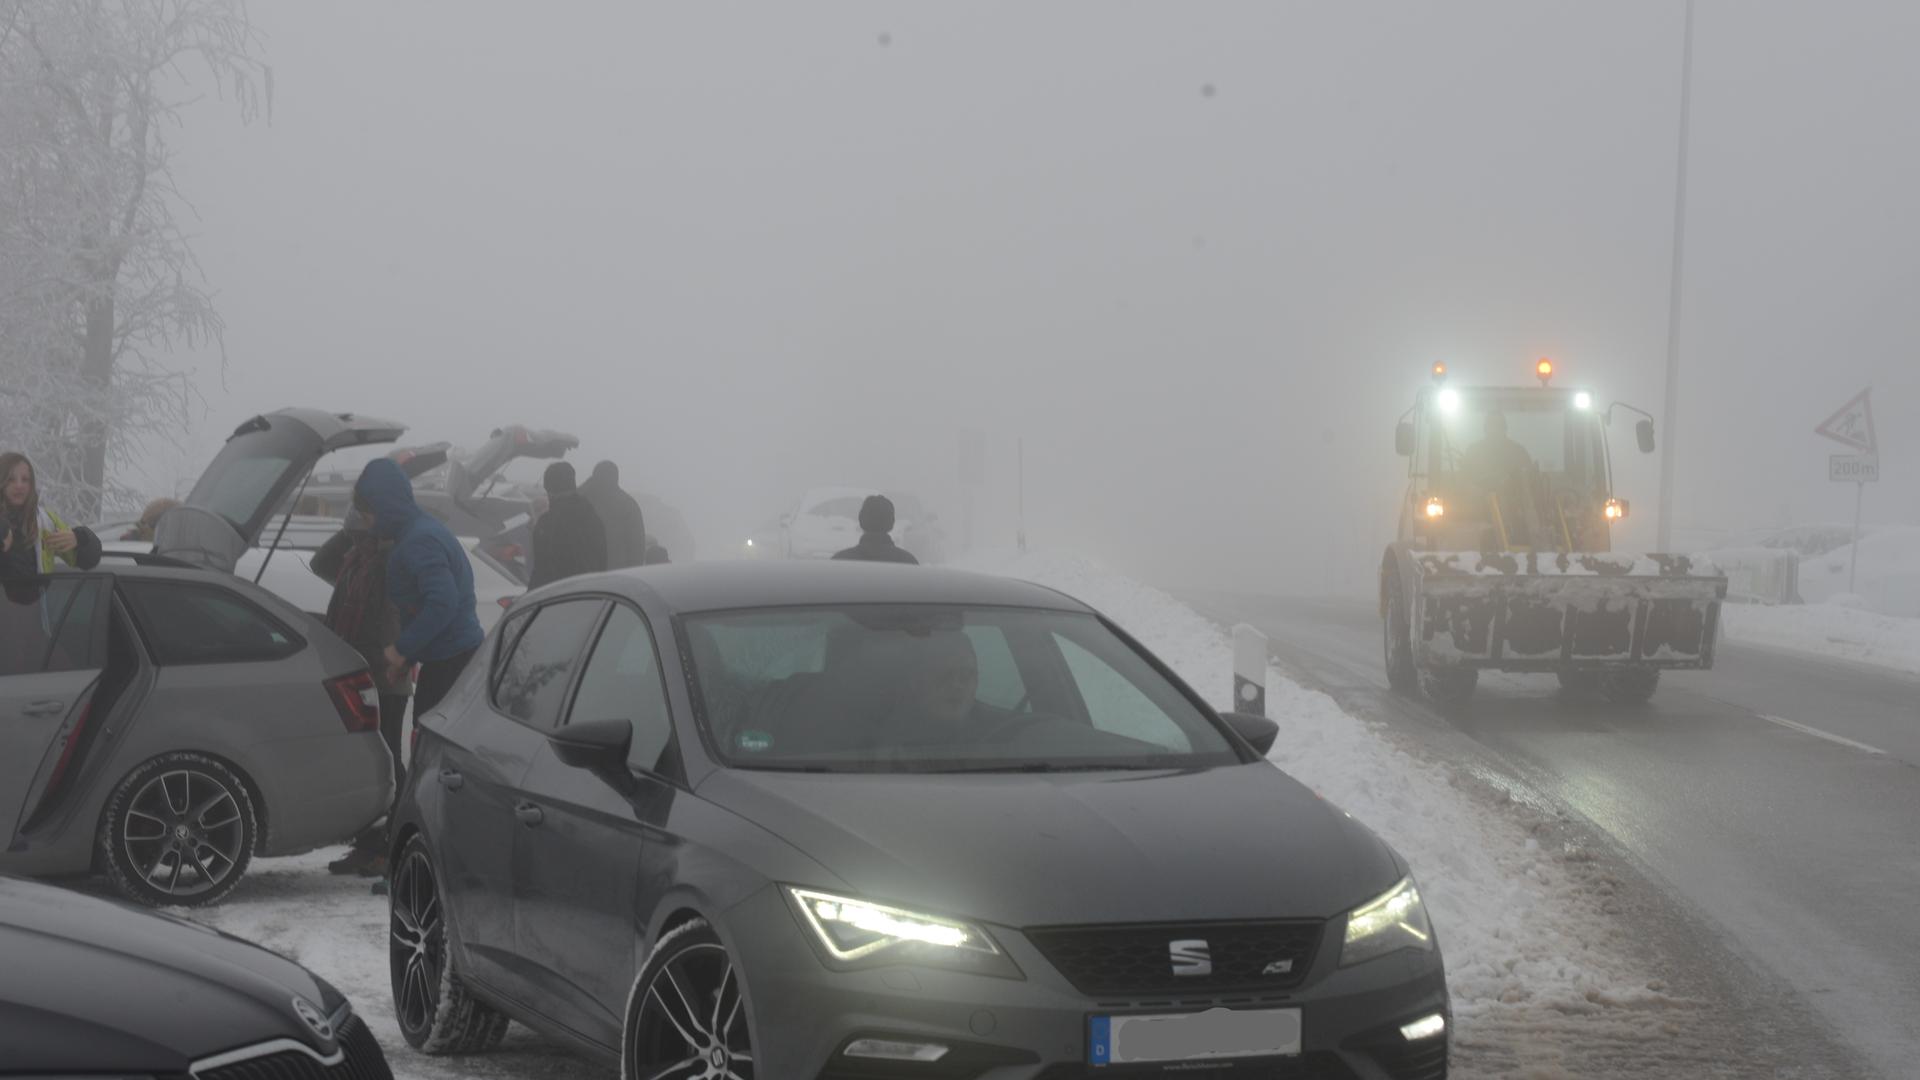 Leidensfähig: Auch bei Schnee, Eisglätte und dichtem Nebel fuhren am Wochenende viele mit ihrem Auto in die Höhengebiete. Die Parkplätze waren, wie hier am Mummelsee, schon früh vollständig belegt. Zu Sperrungen kam es aber nicht.